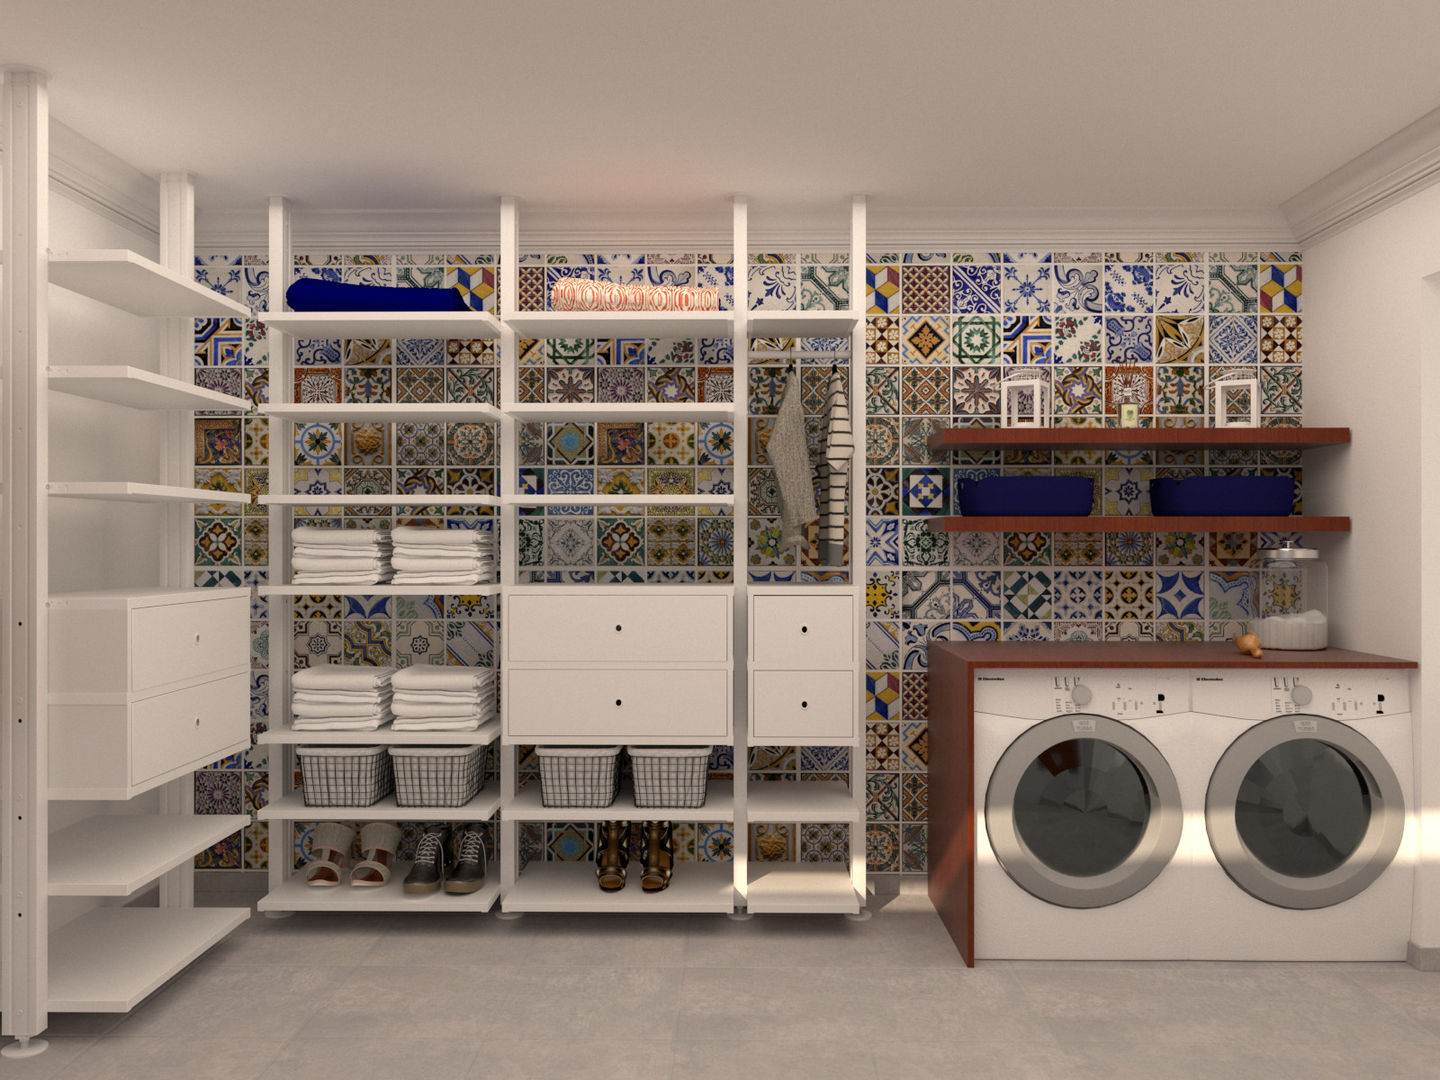 Laundry Room, Filipa Sousa Interior Design Filipa Sousa Interior Design Casas de estilo moderno Accesorios y decoración